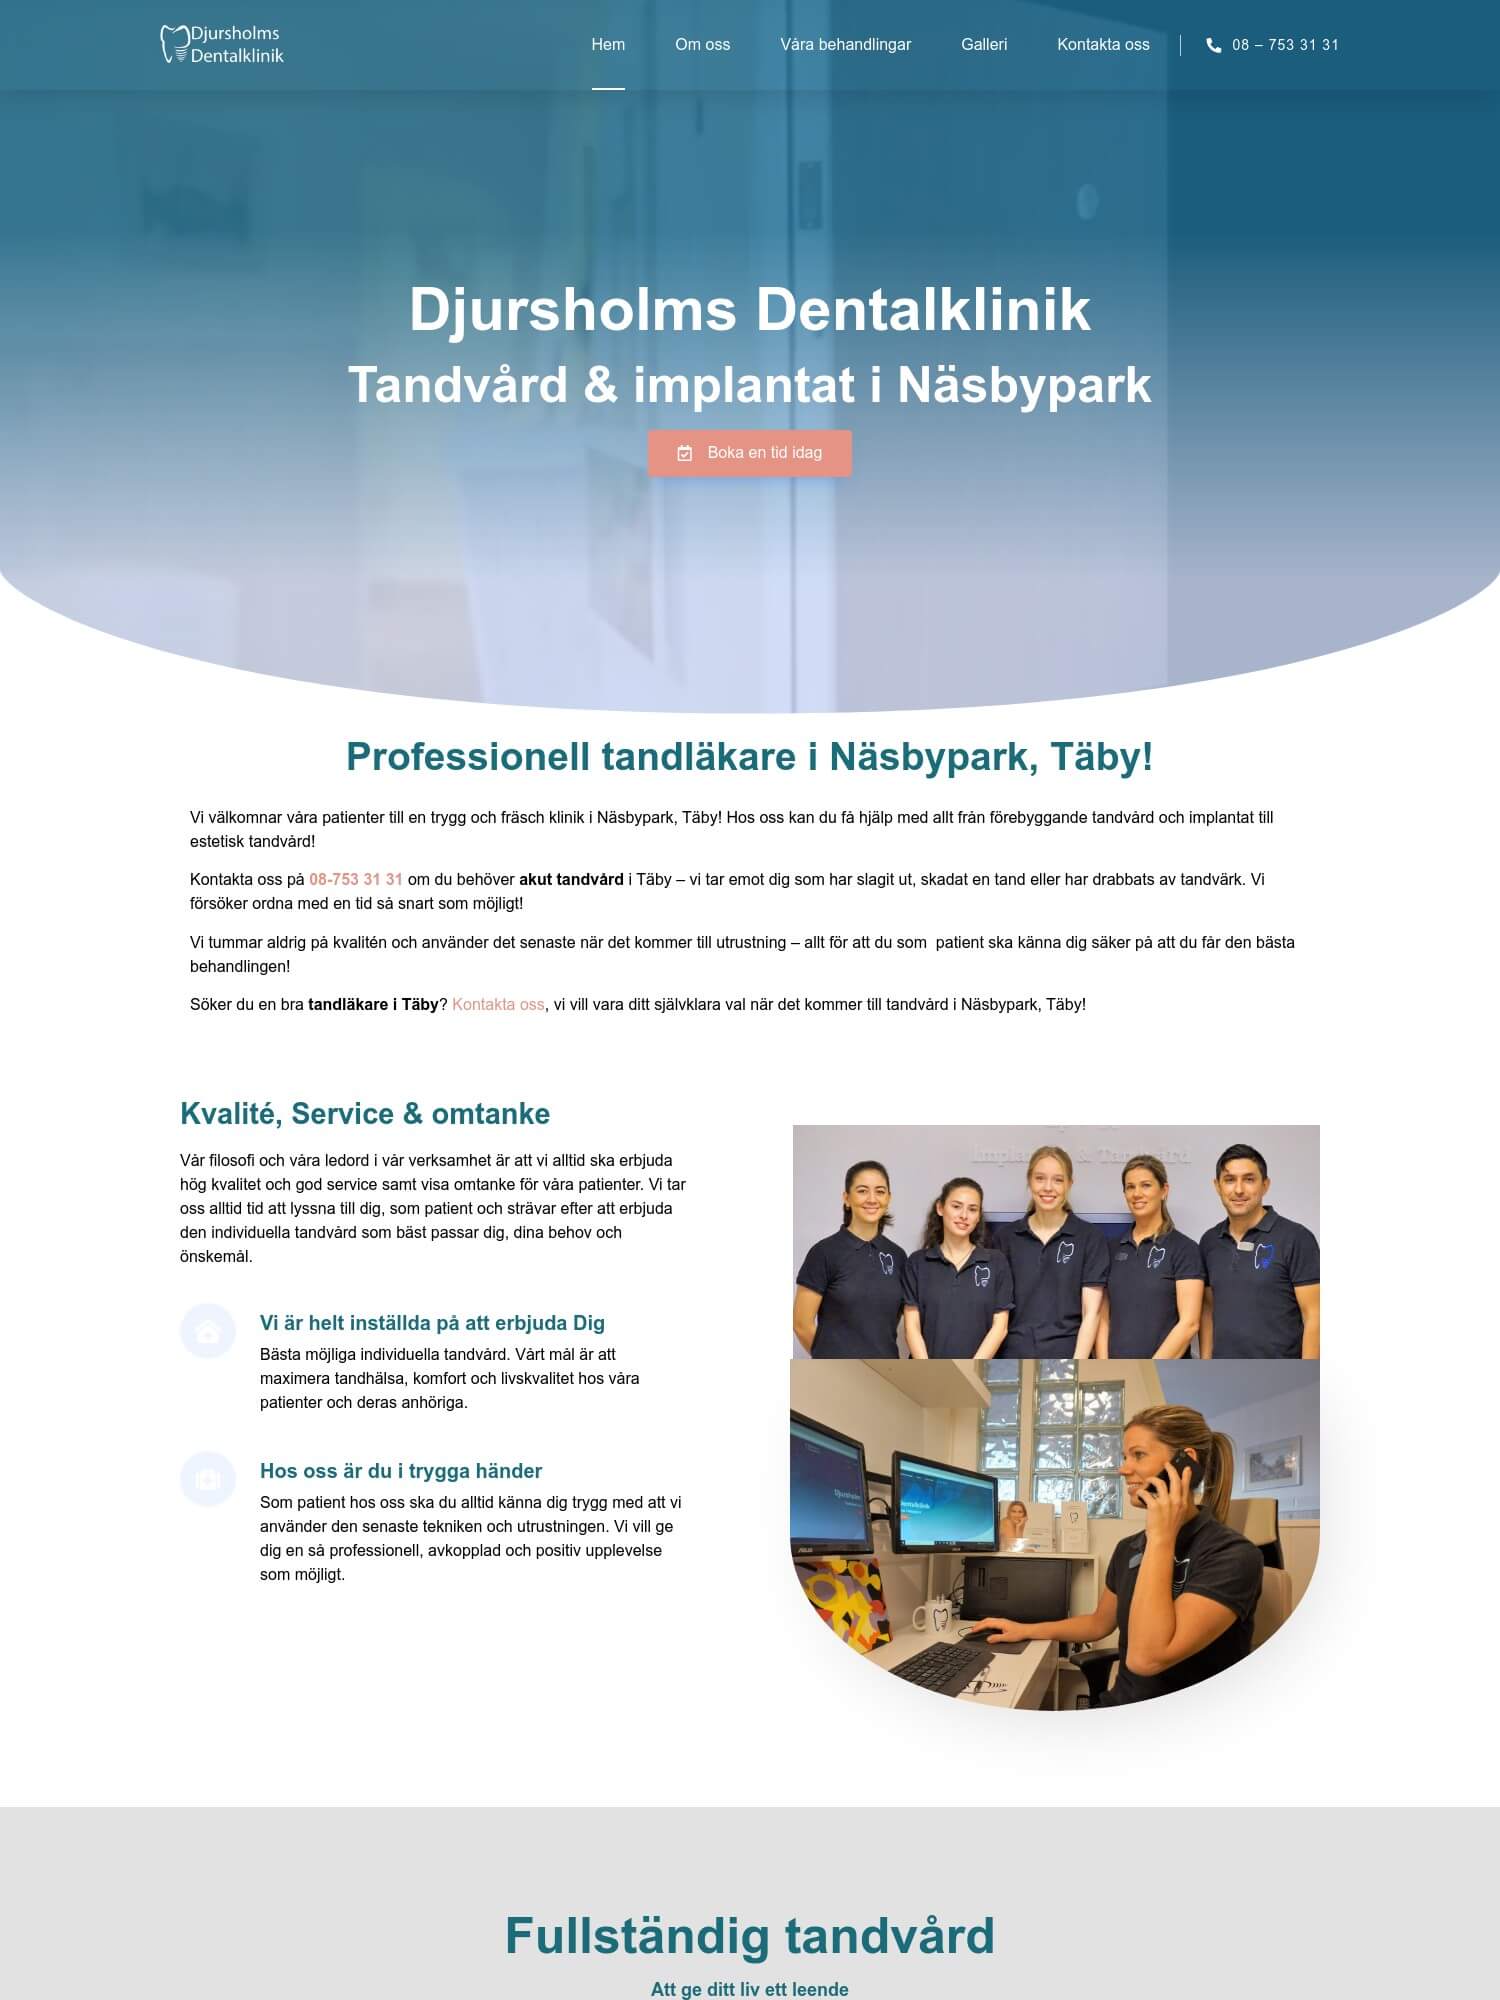 Professionell tandlakare i Taby Djurshomls Dentalklinik 1 Interwebsite Webbyrå